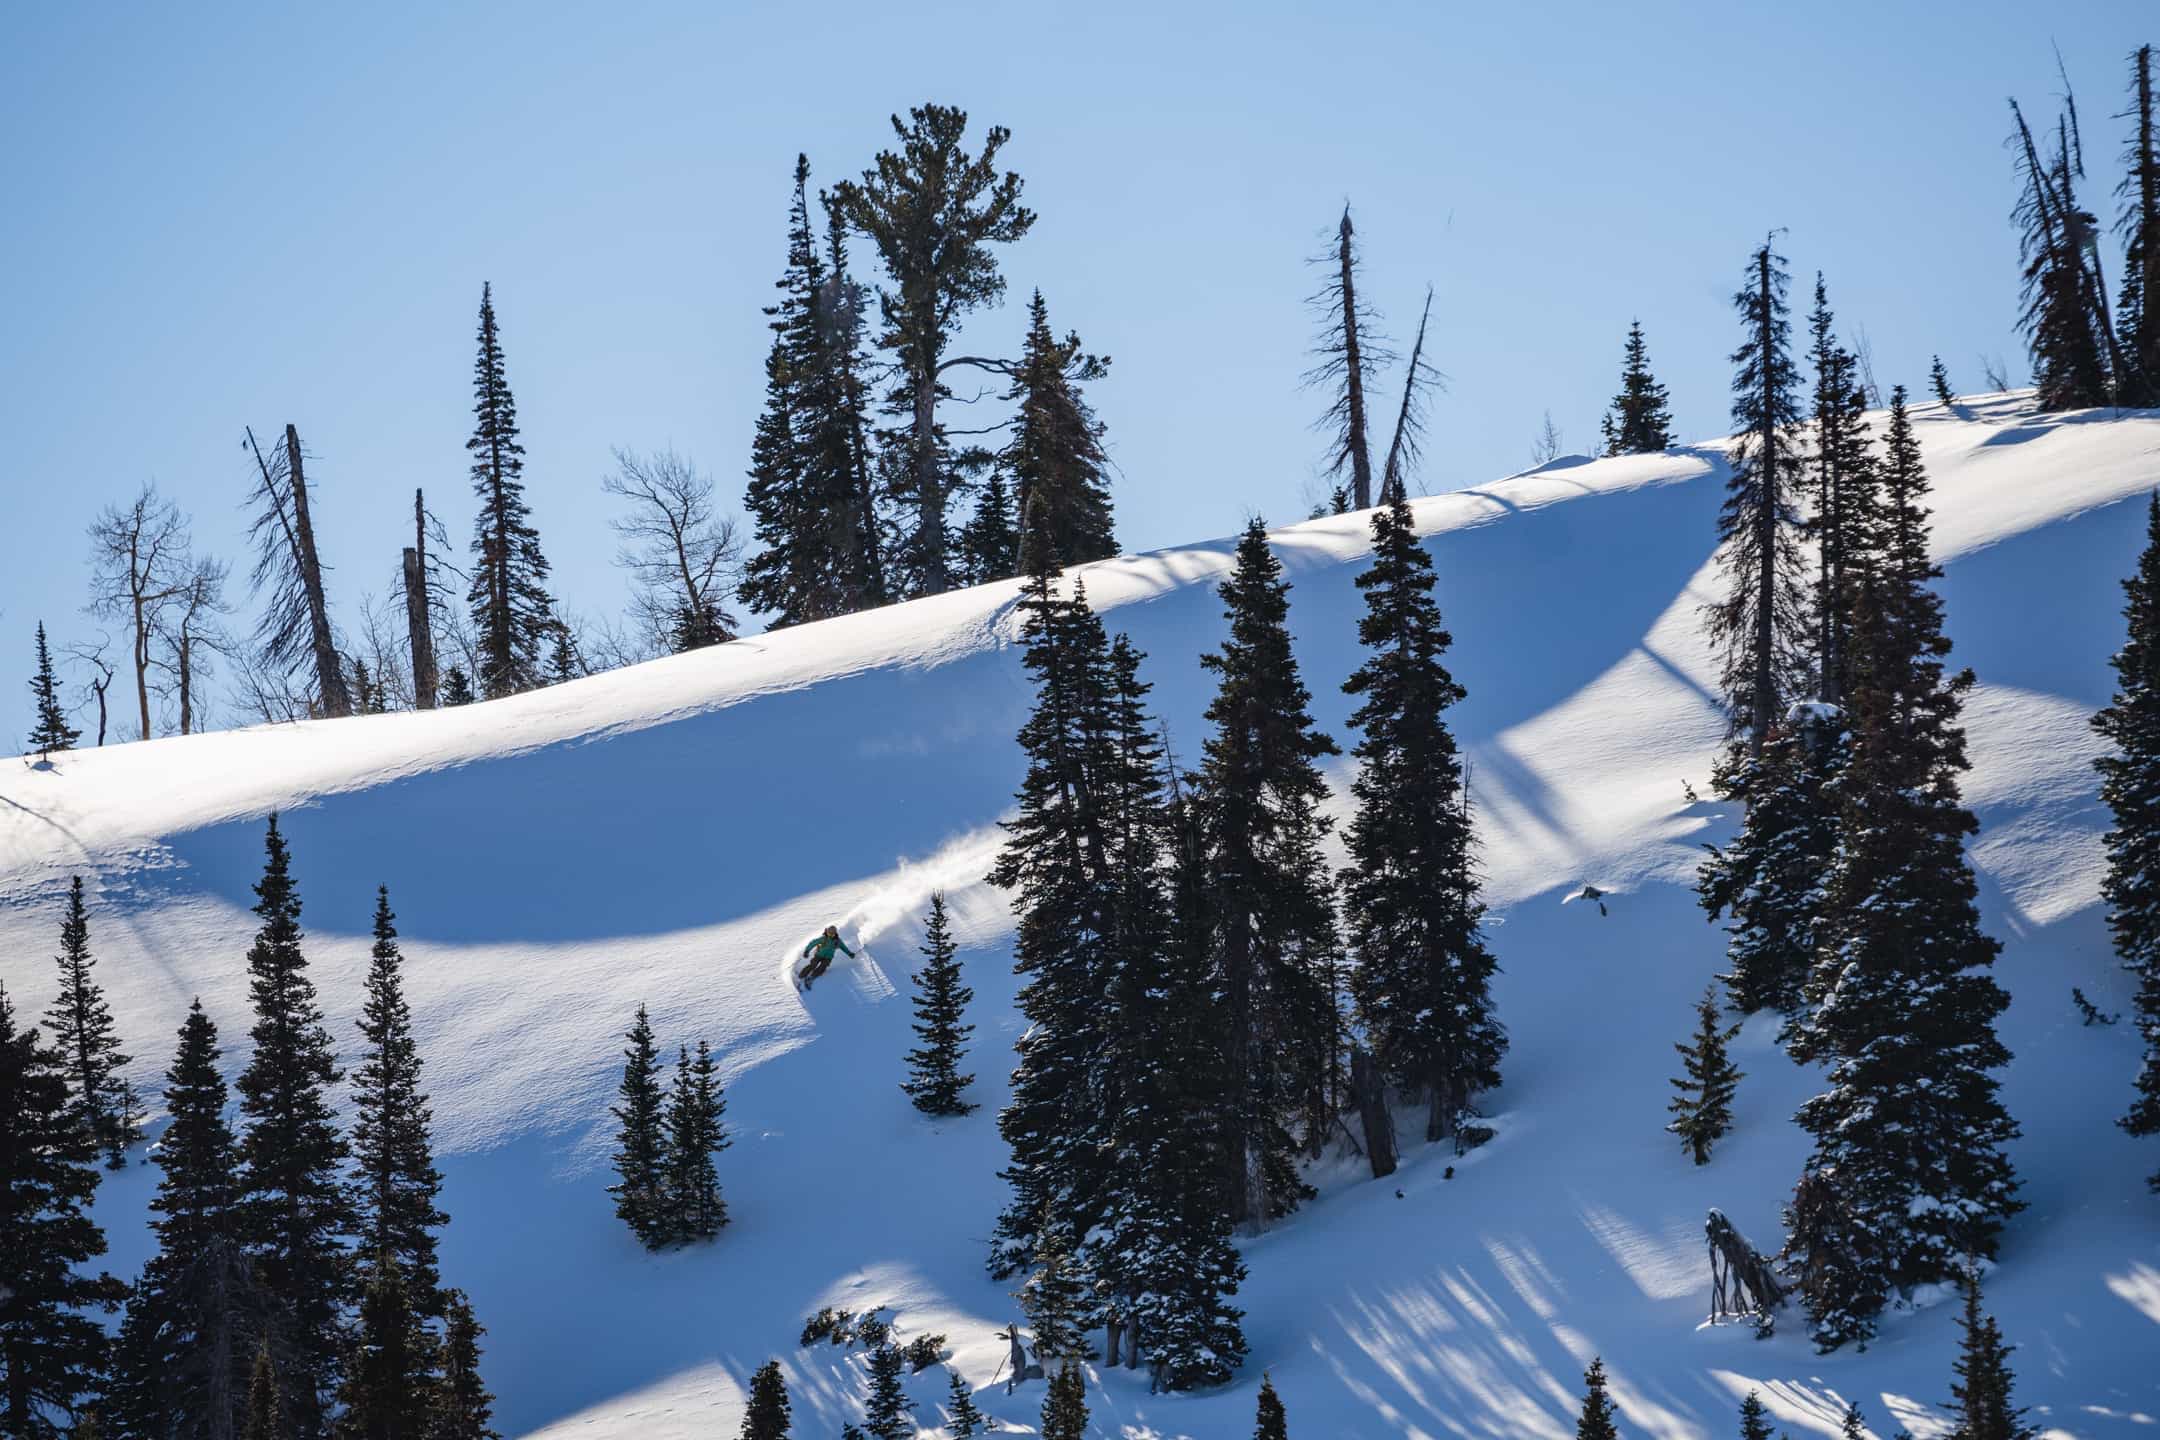 esquiador em uma pista de neve com árvores e céu azul